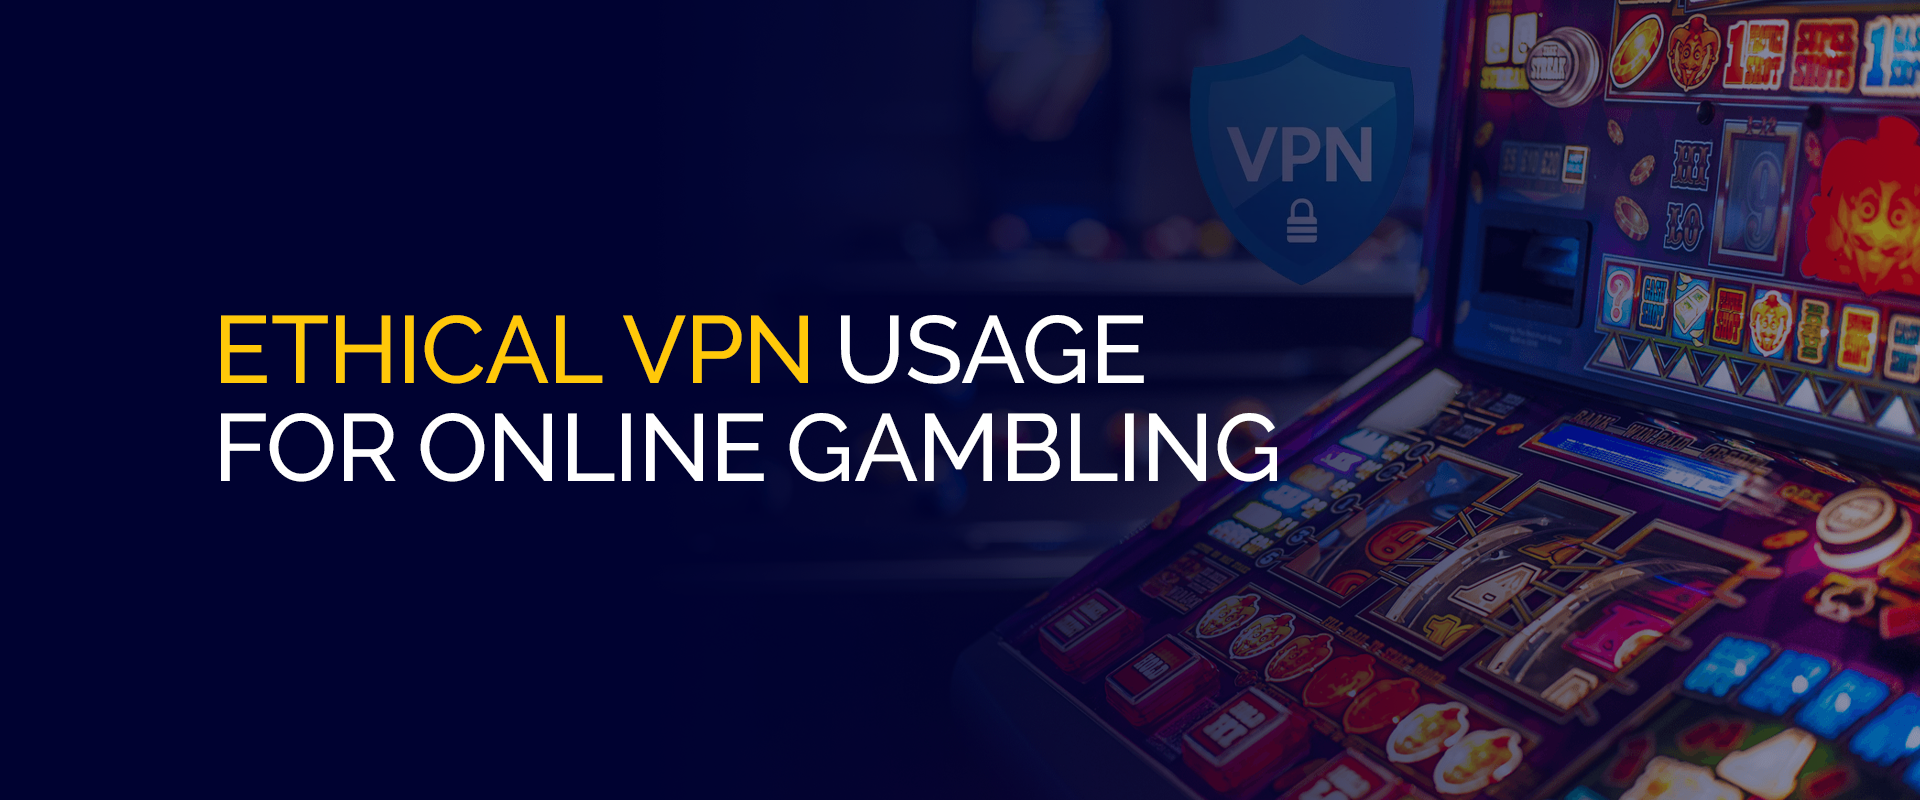 在线赌博的道德 VPN 使用